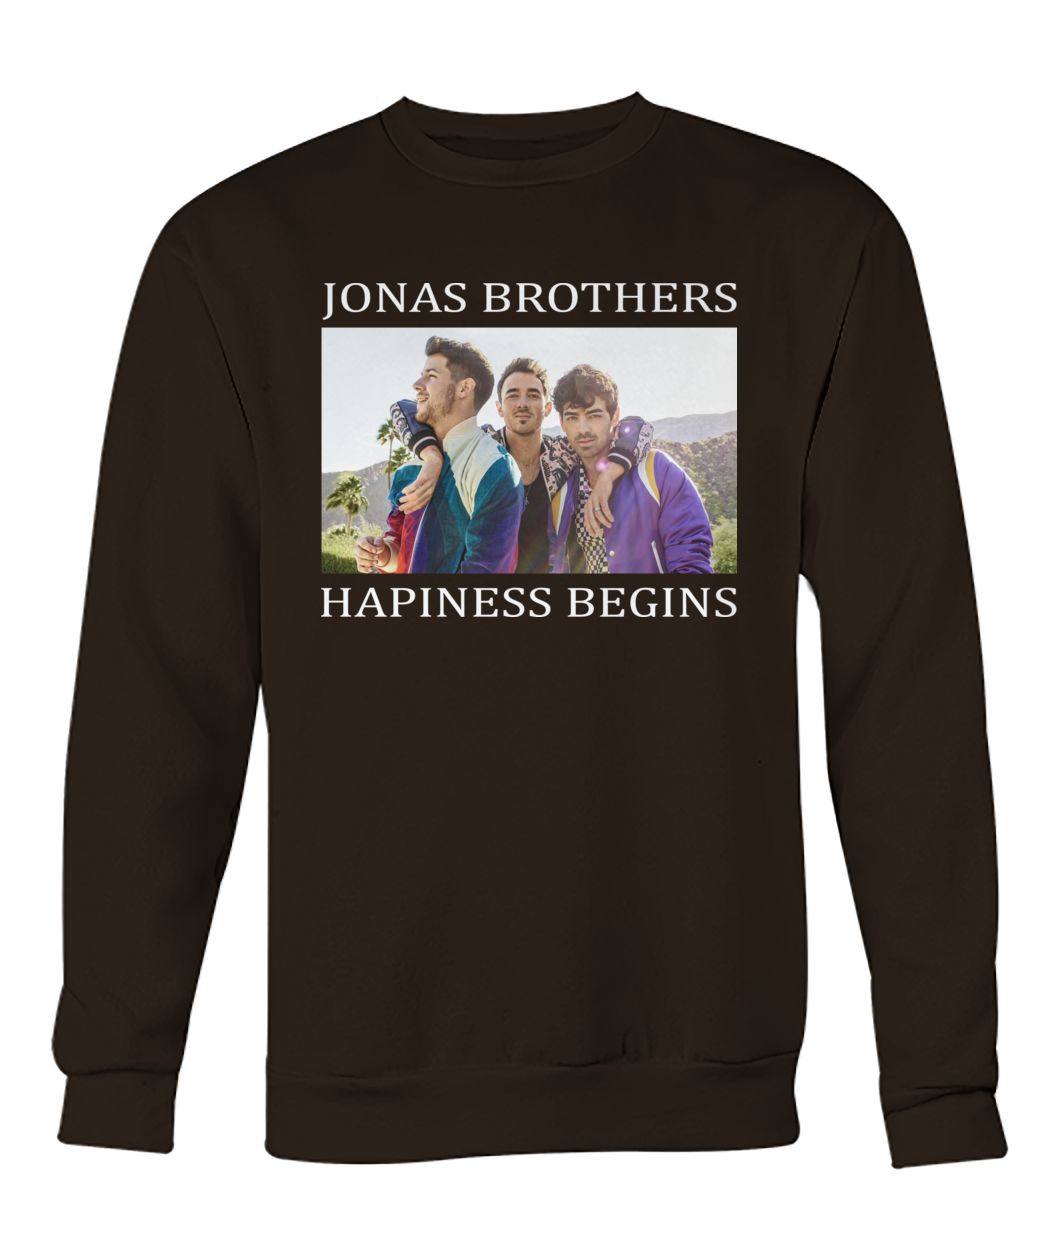 Jonas brothers happiness begins crew neck sweatshirt